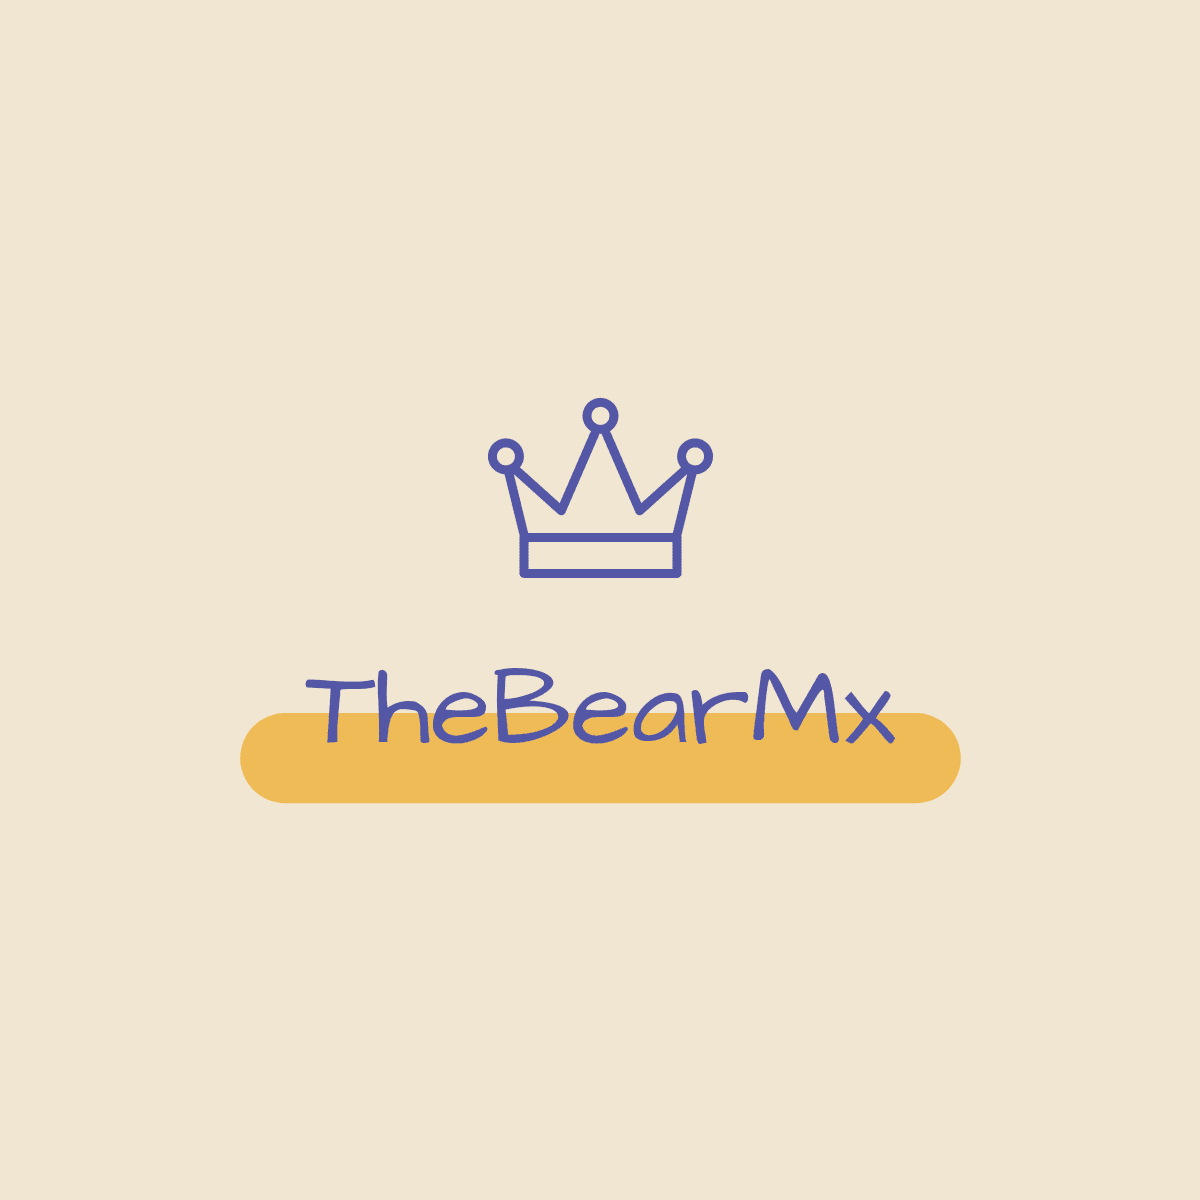 The bear mx